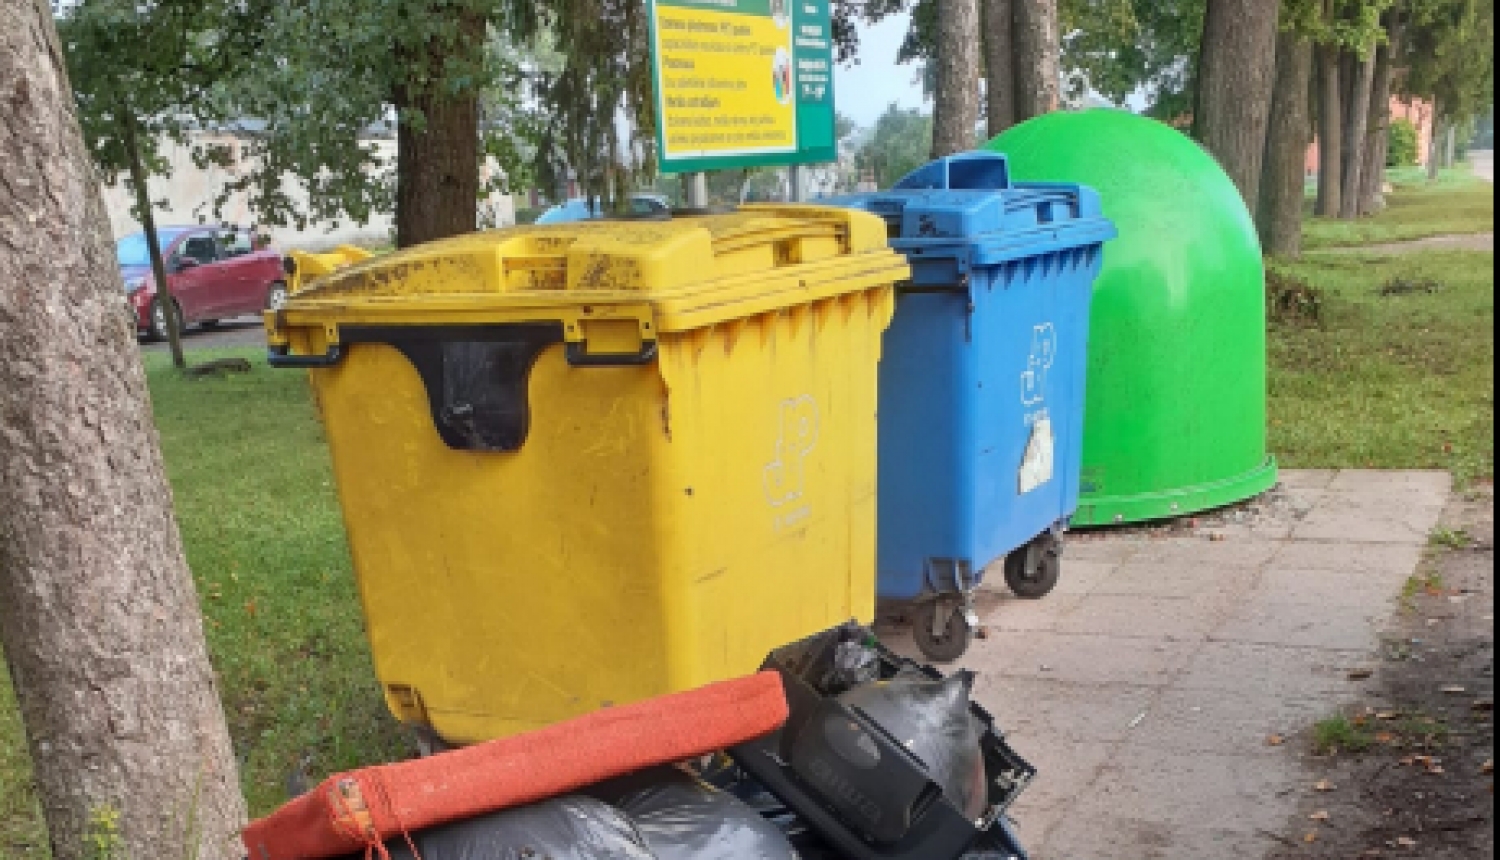 Fiksētie atkritumu šķirošanas laukumu piemēslošanas gadījumi tiks nodoti policijai